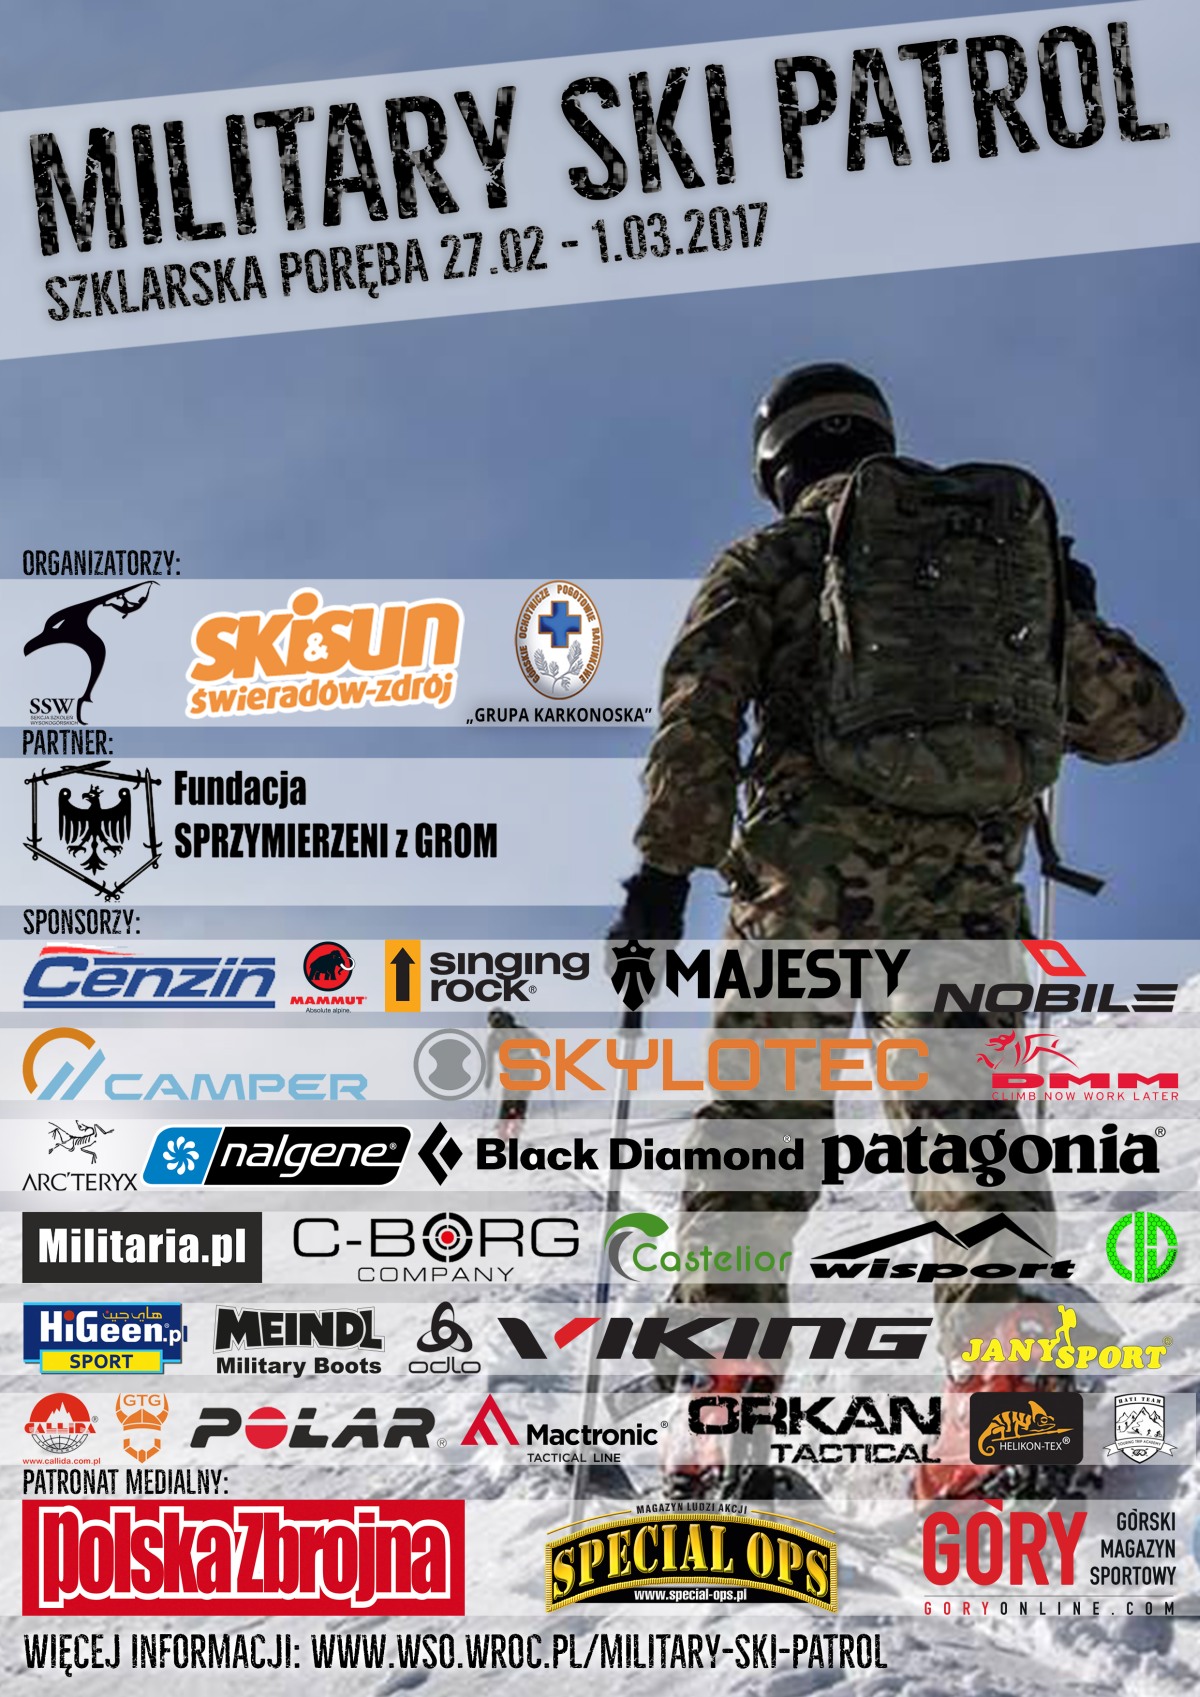 Military Ski Patrol 2017 plakat